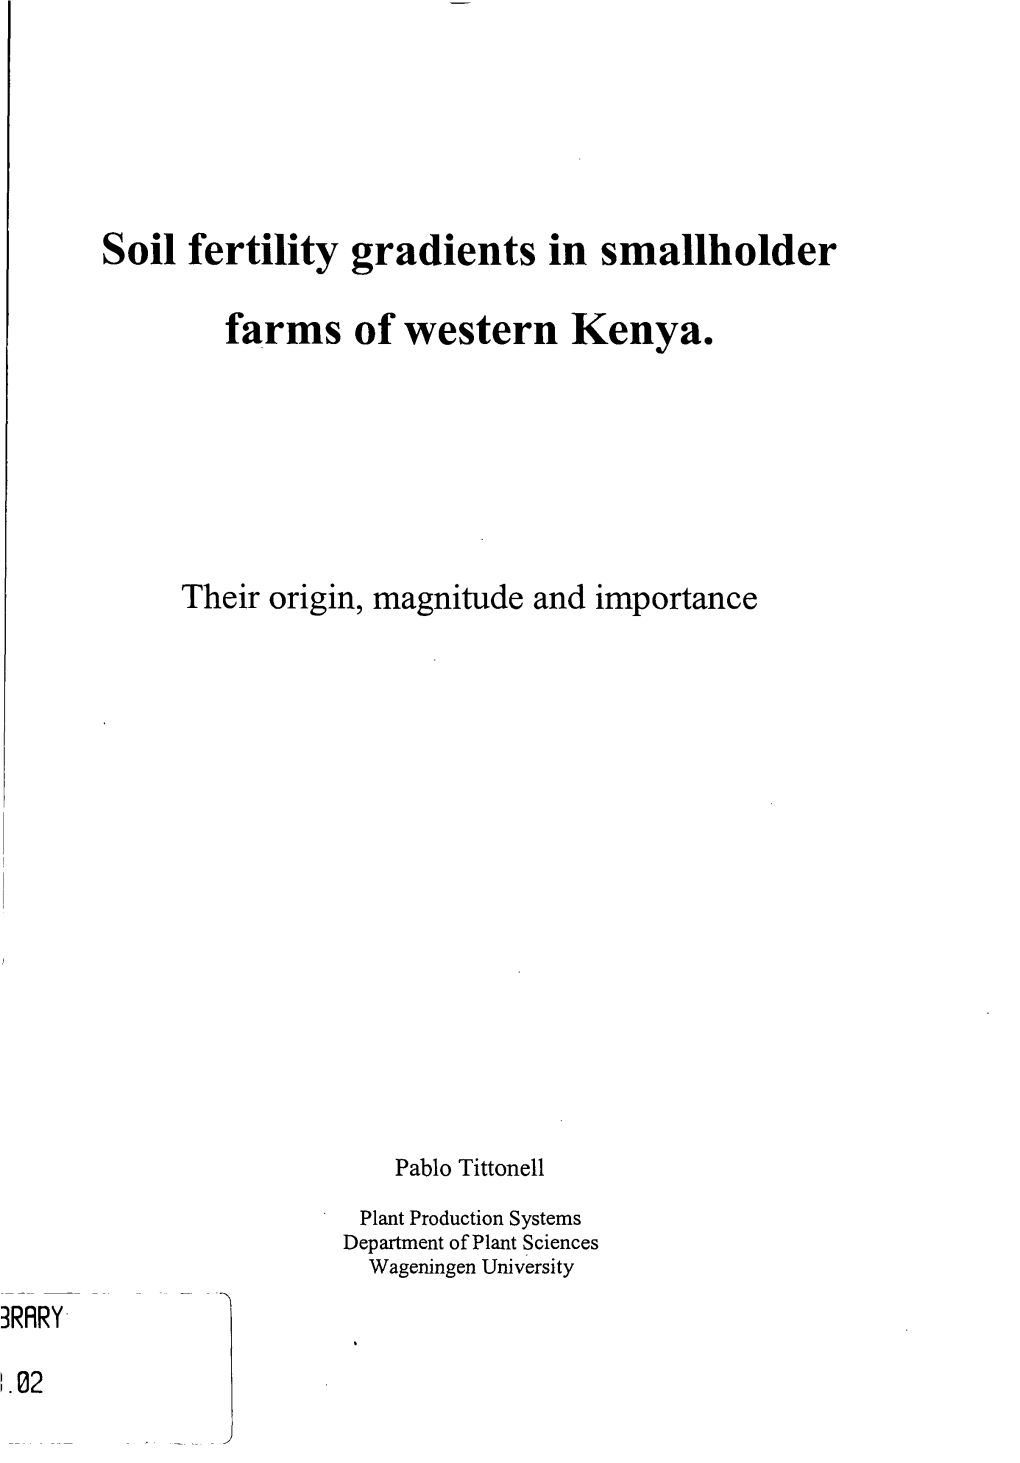 Soil Fertility Gradients in Smallholder Farms of Western Kenya